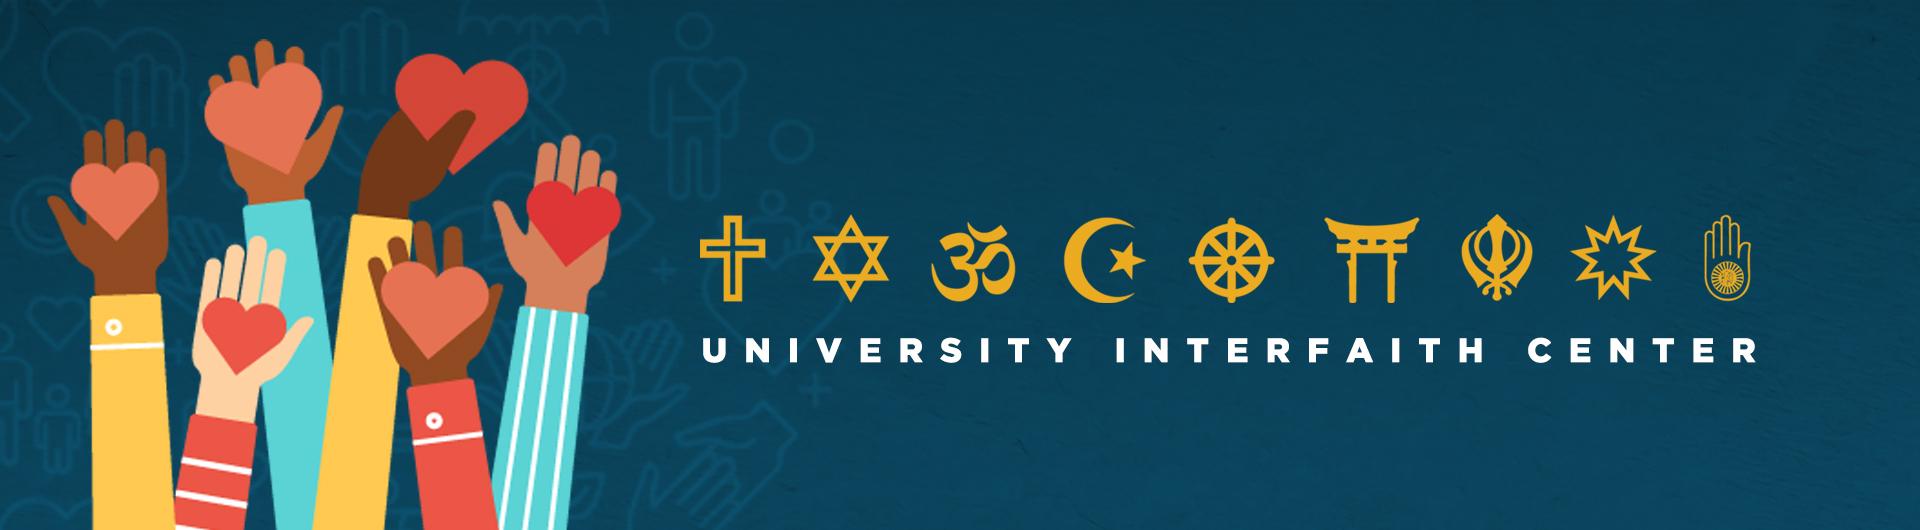 University Interfaith Center